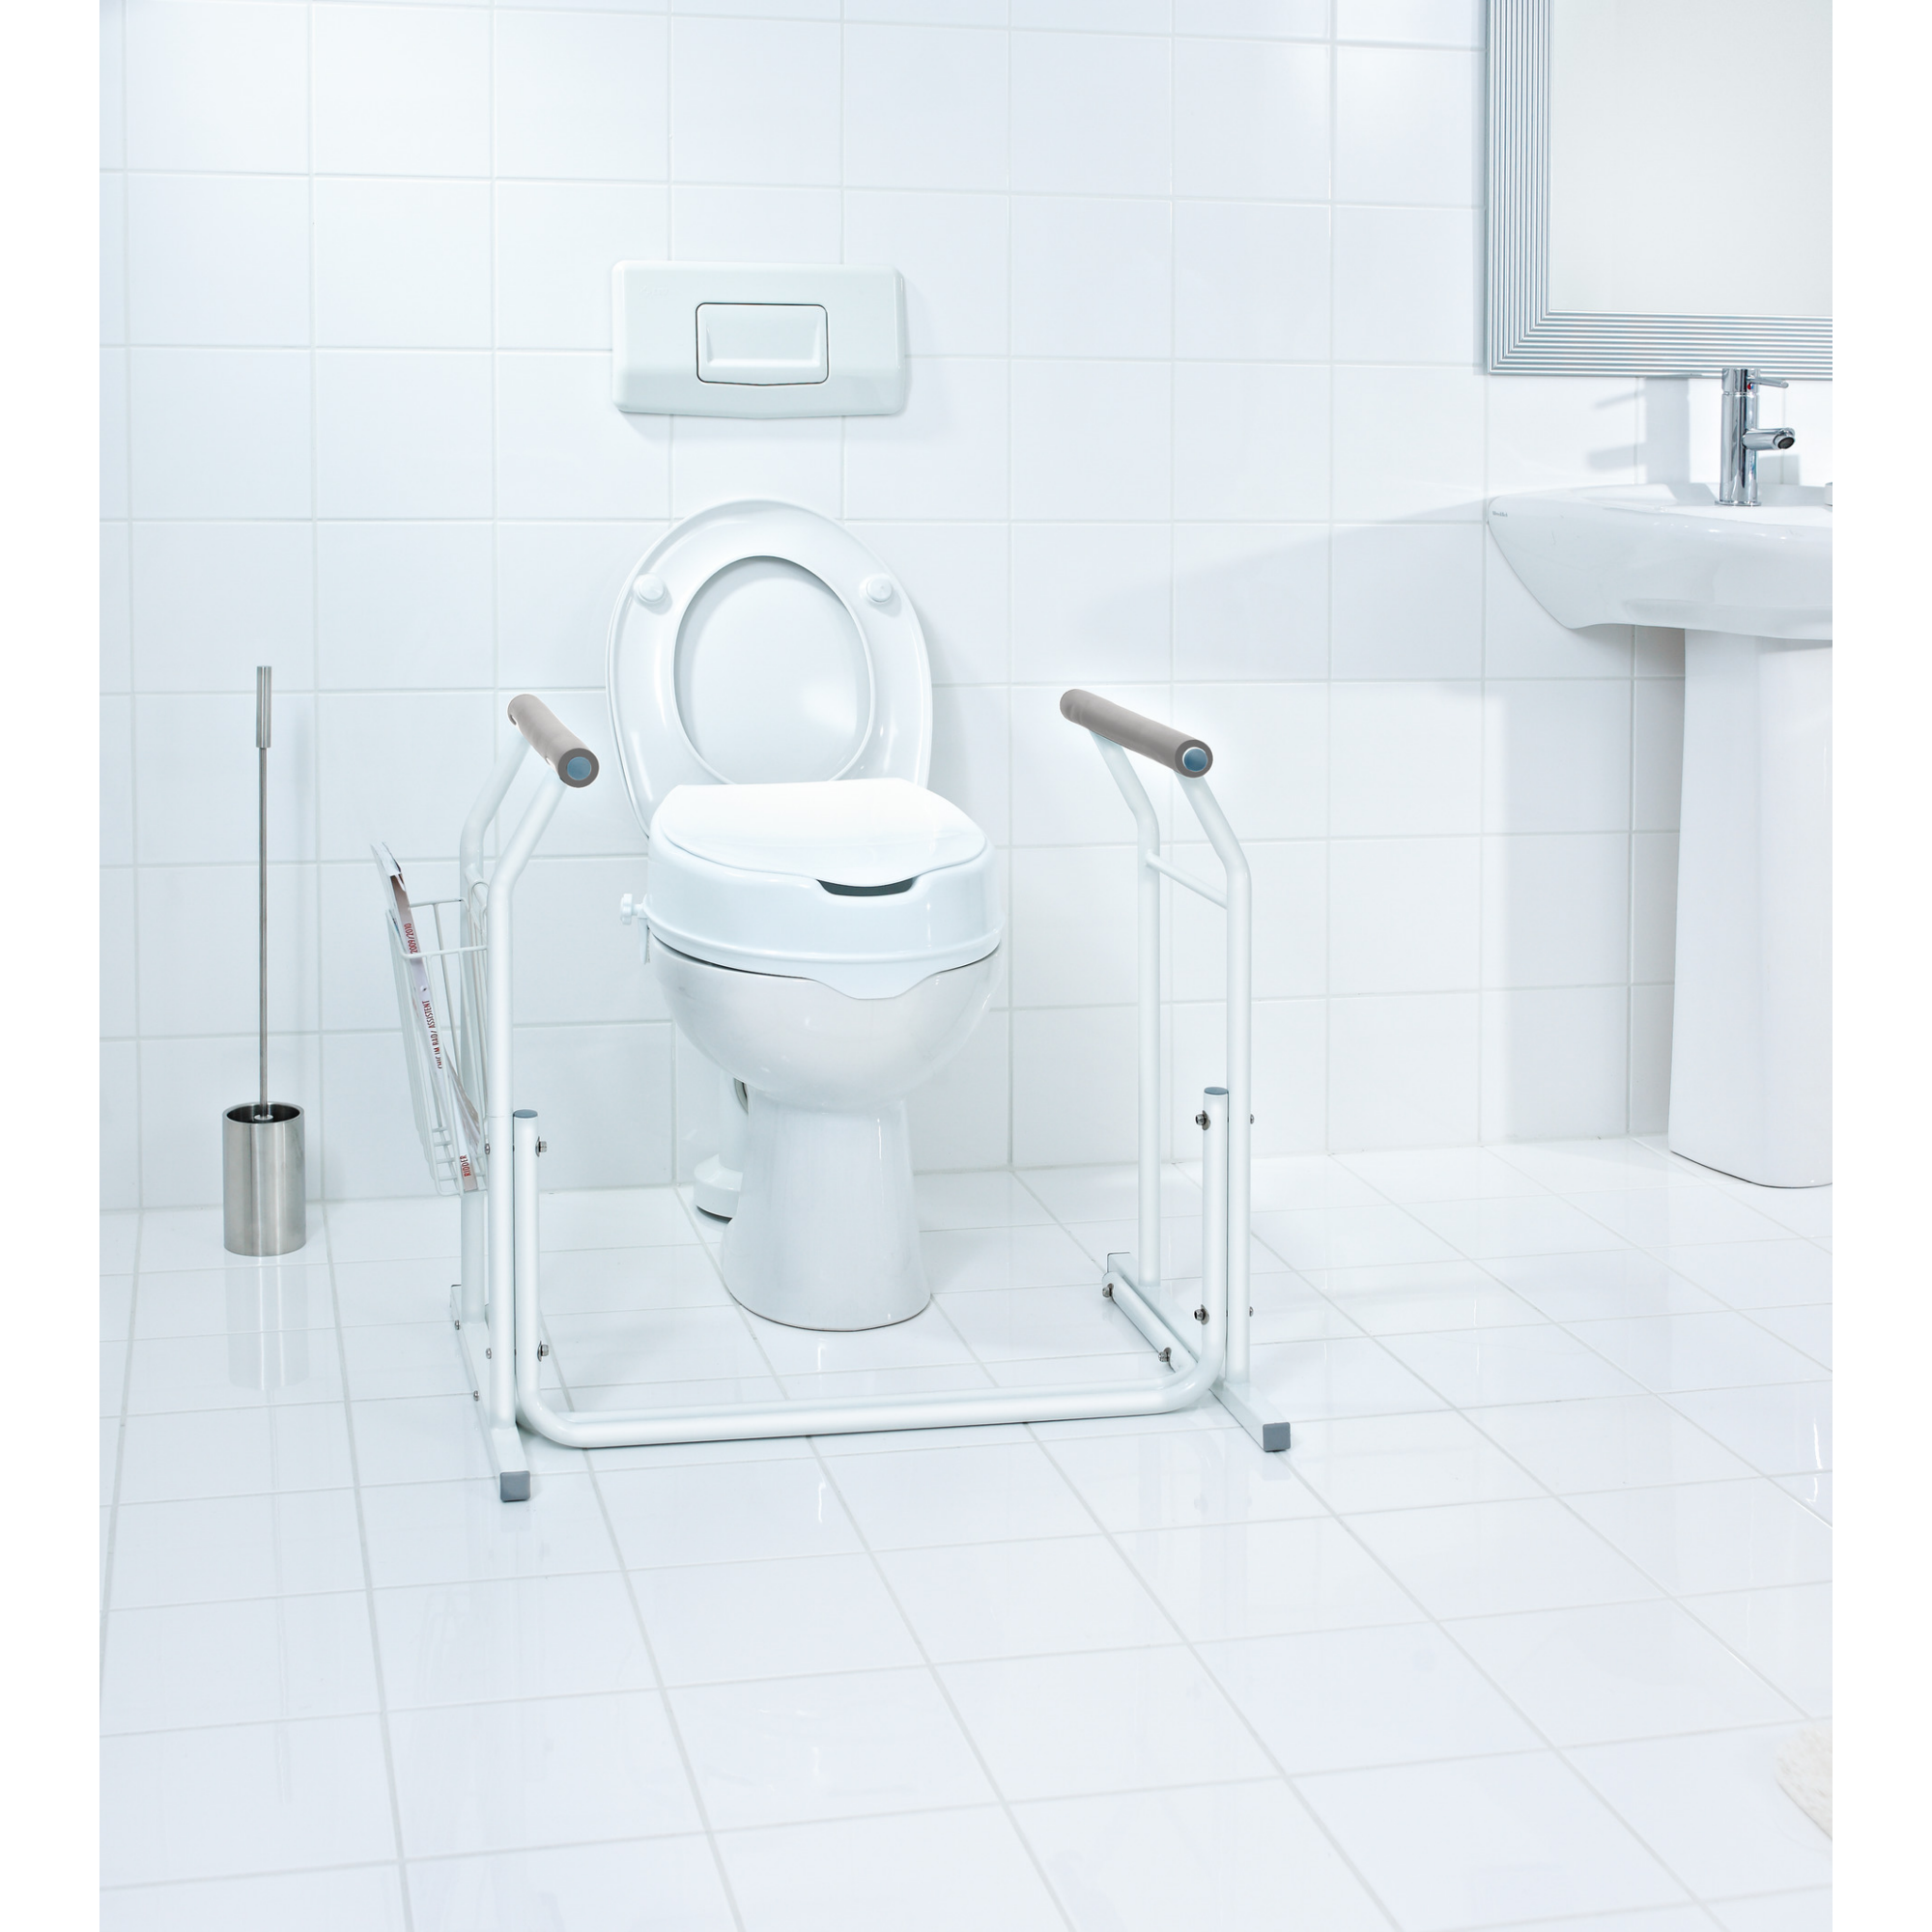 Mobile WC-Aufstehhilfe mit Ablagekorb 'Comfort' weiß, bis 100 kg + product picture